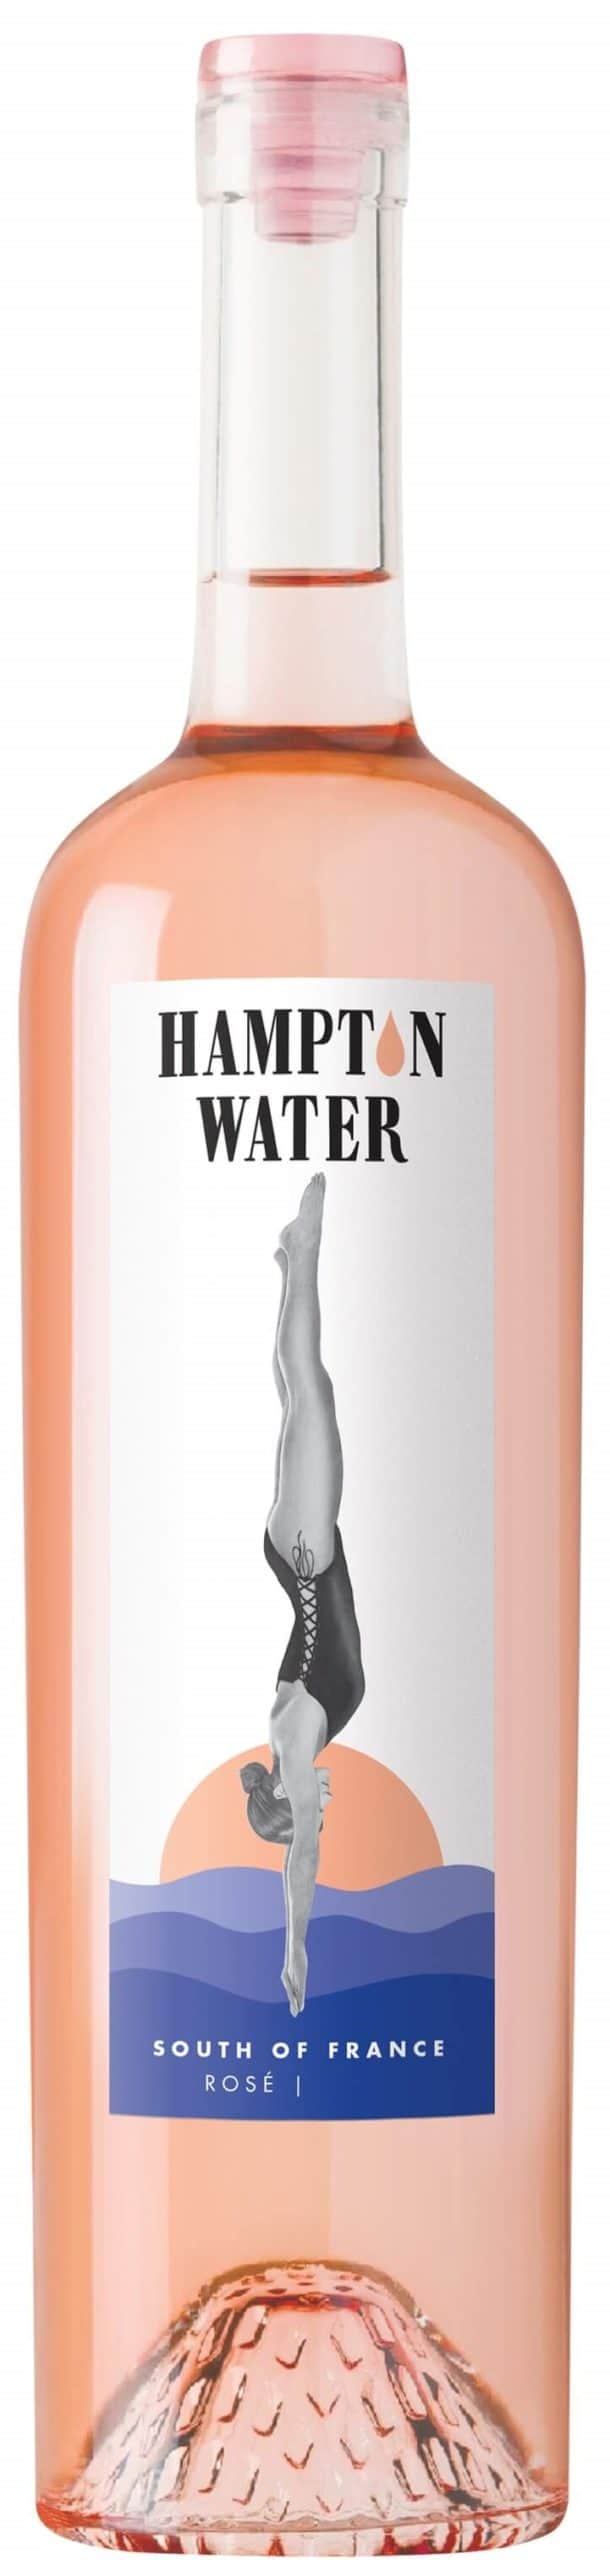 hampton water rosé 2020